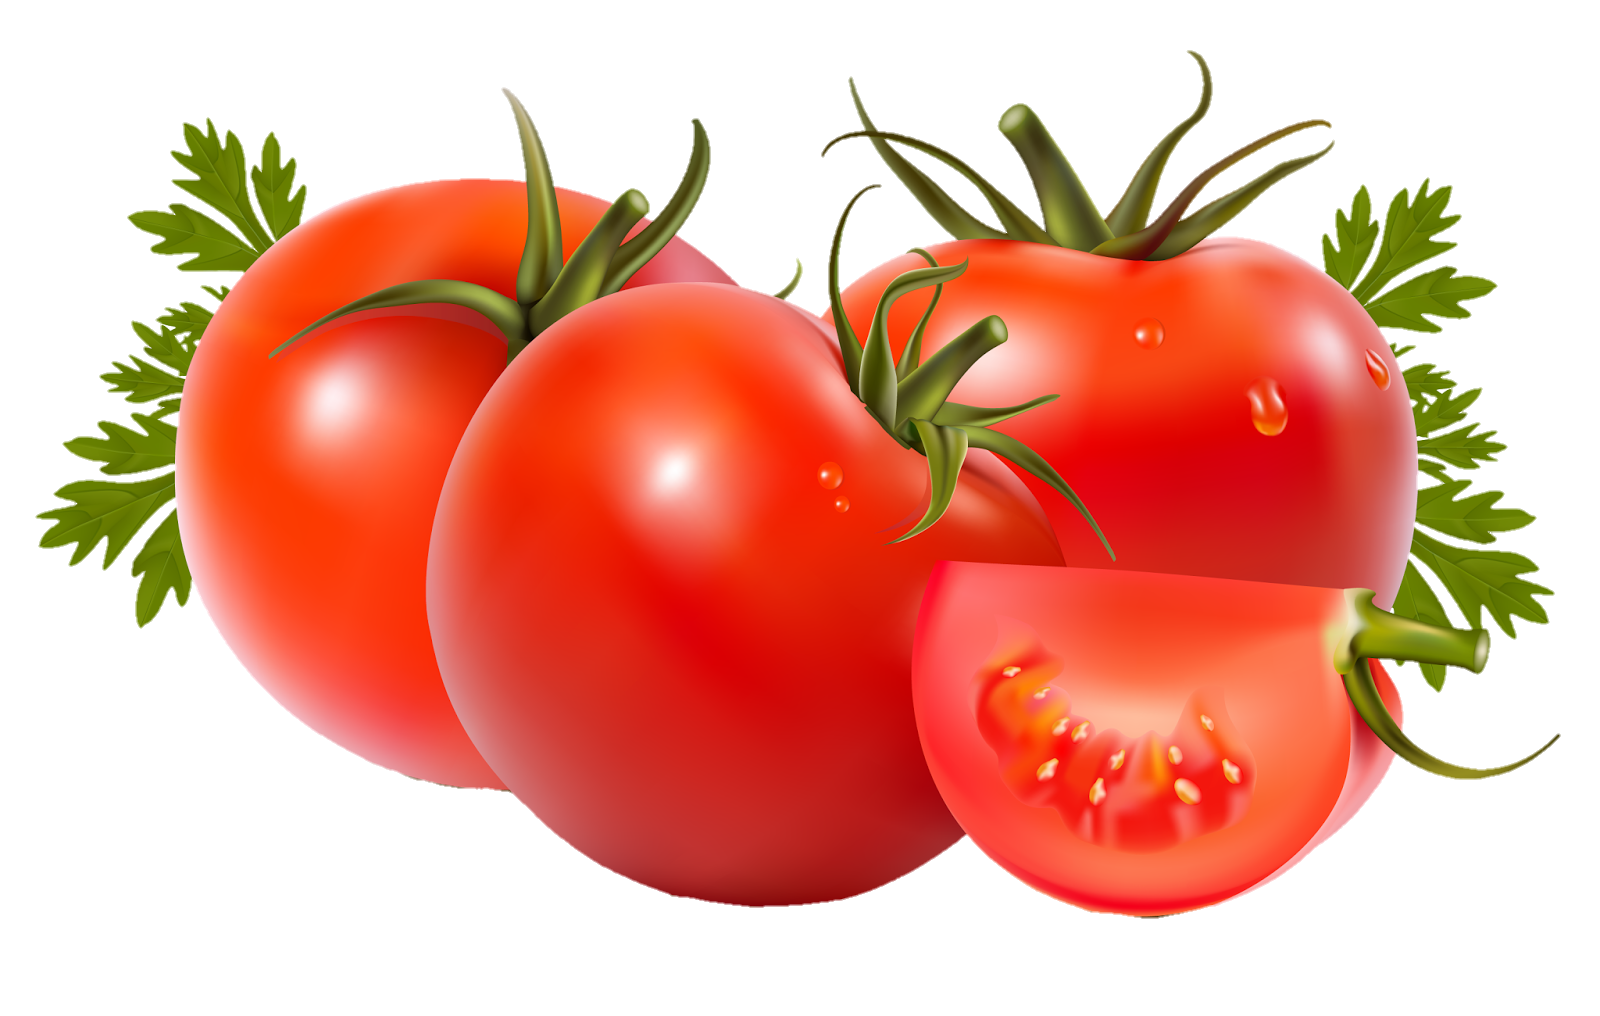 Tomato-17-2